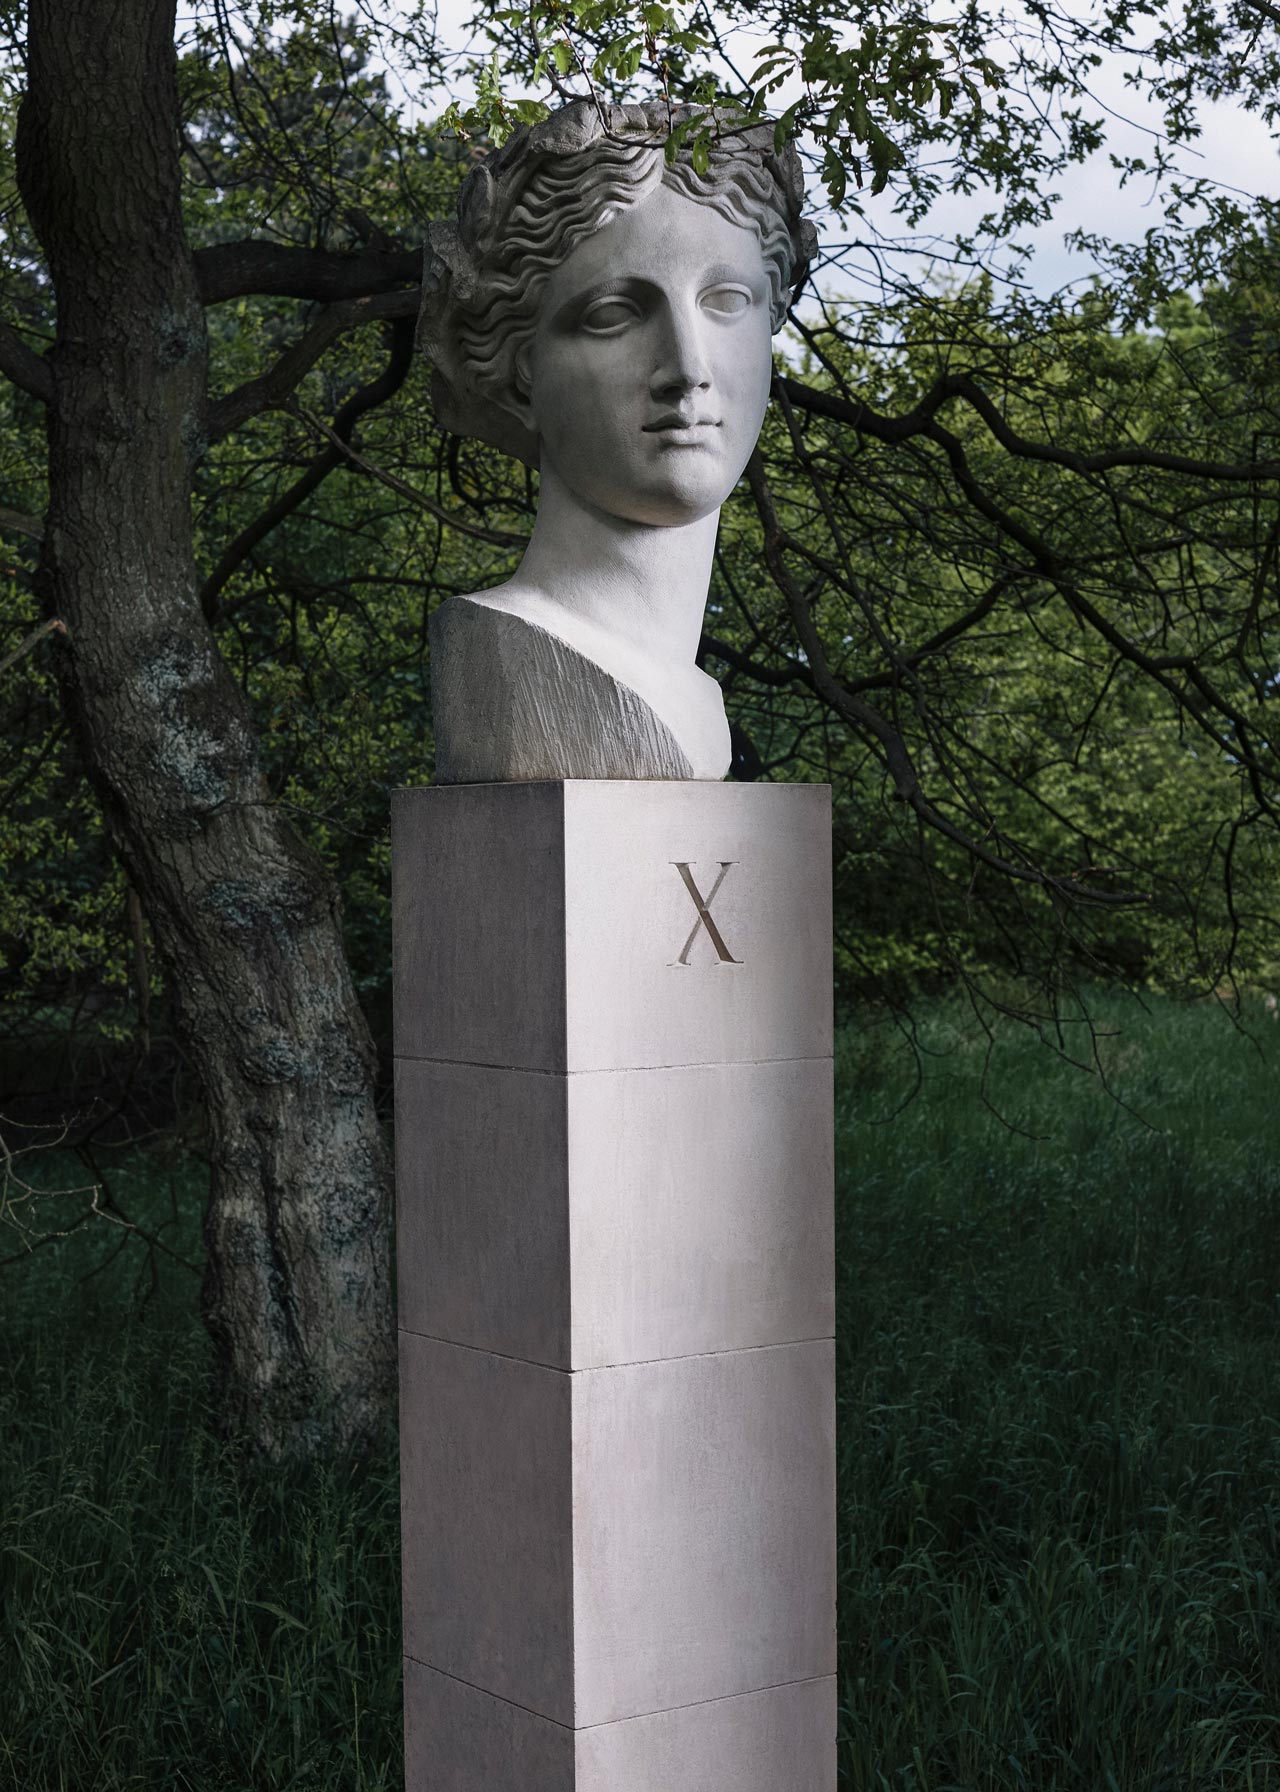 A sculpture by Ian Finlay Hamilton